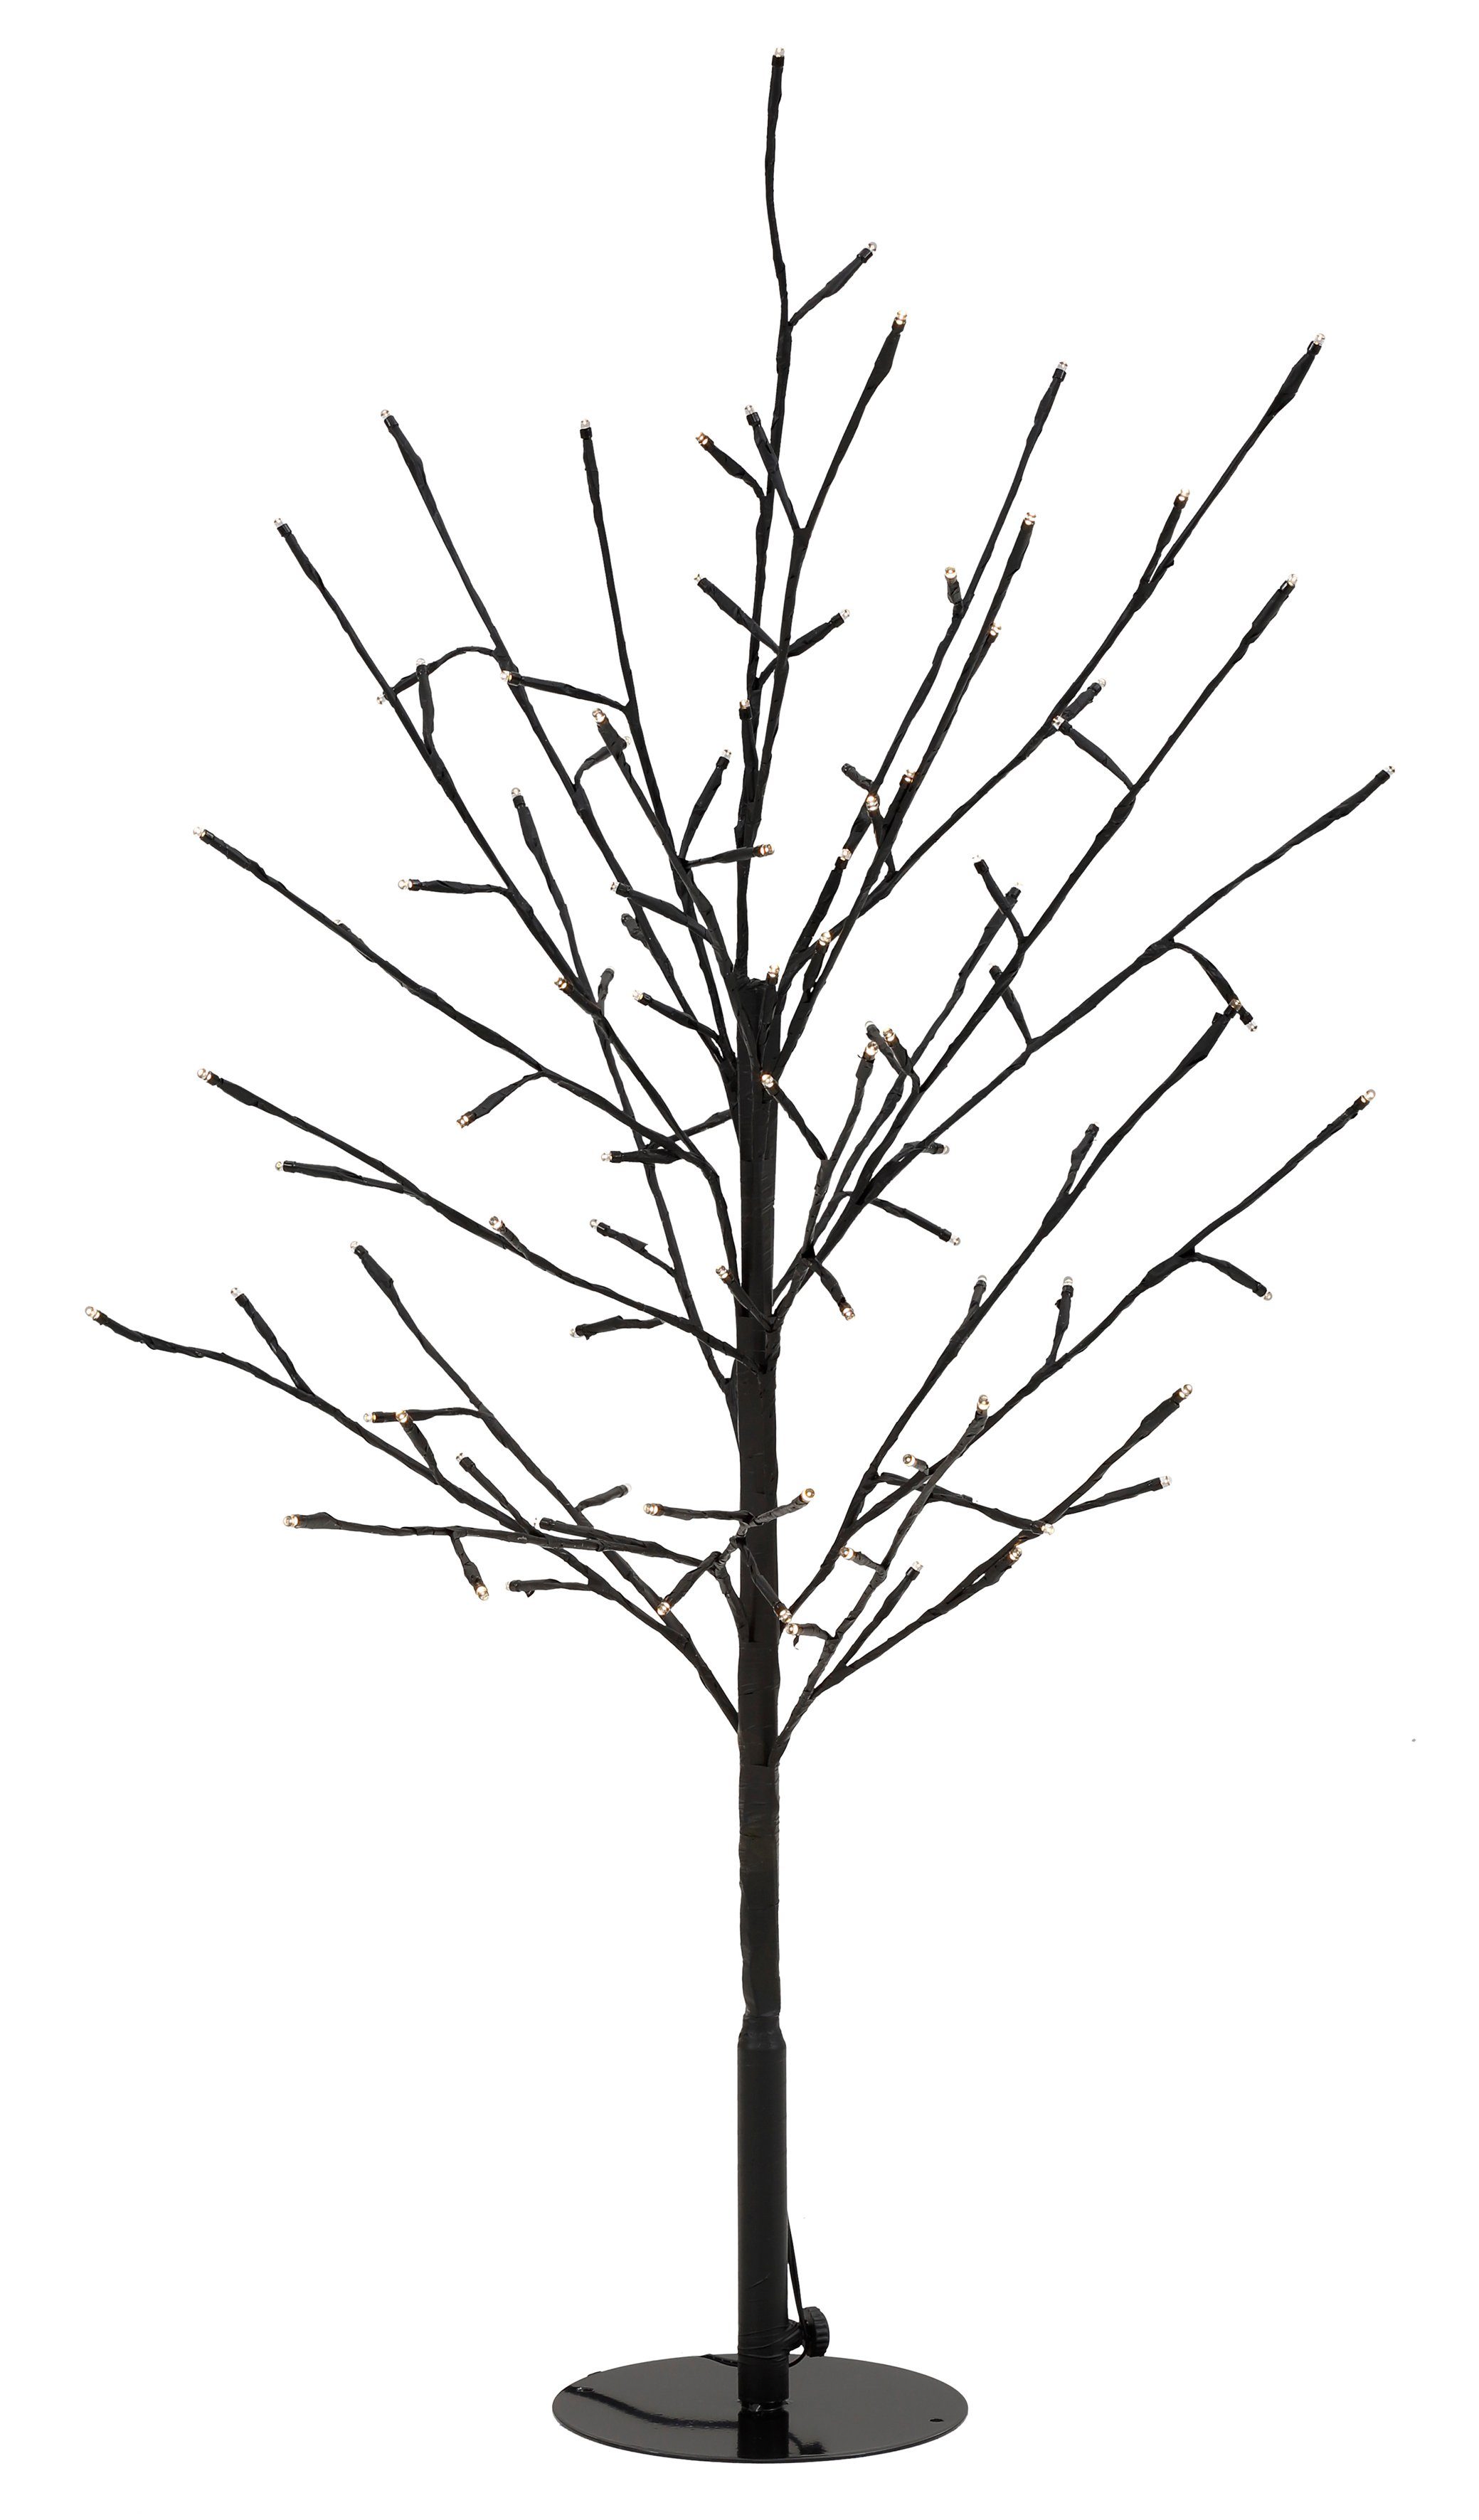 48 LED Baum mit Blüten warm weiß Lichterbaum Blütenbaum 45 cm Timer Trafo